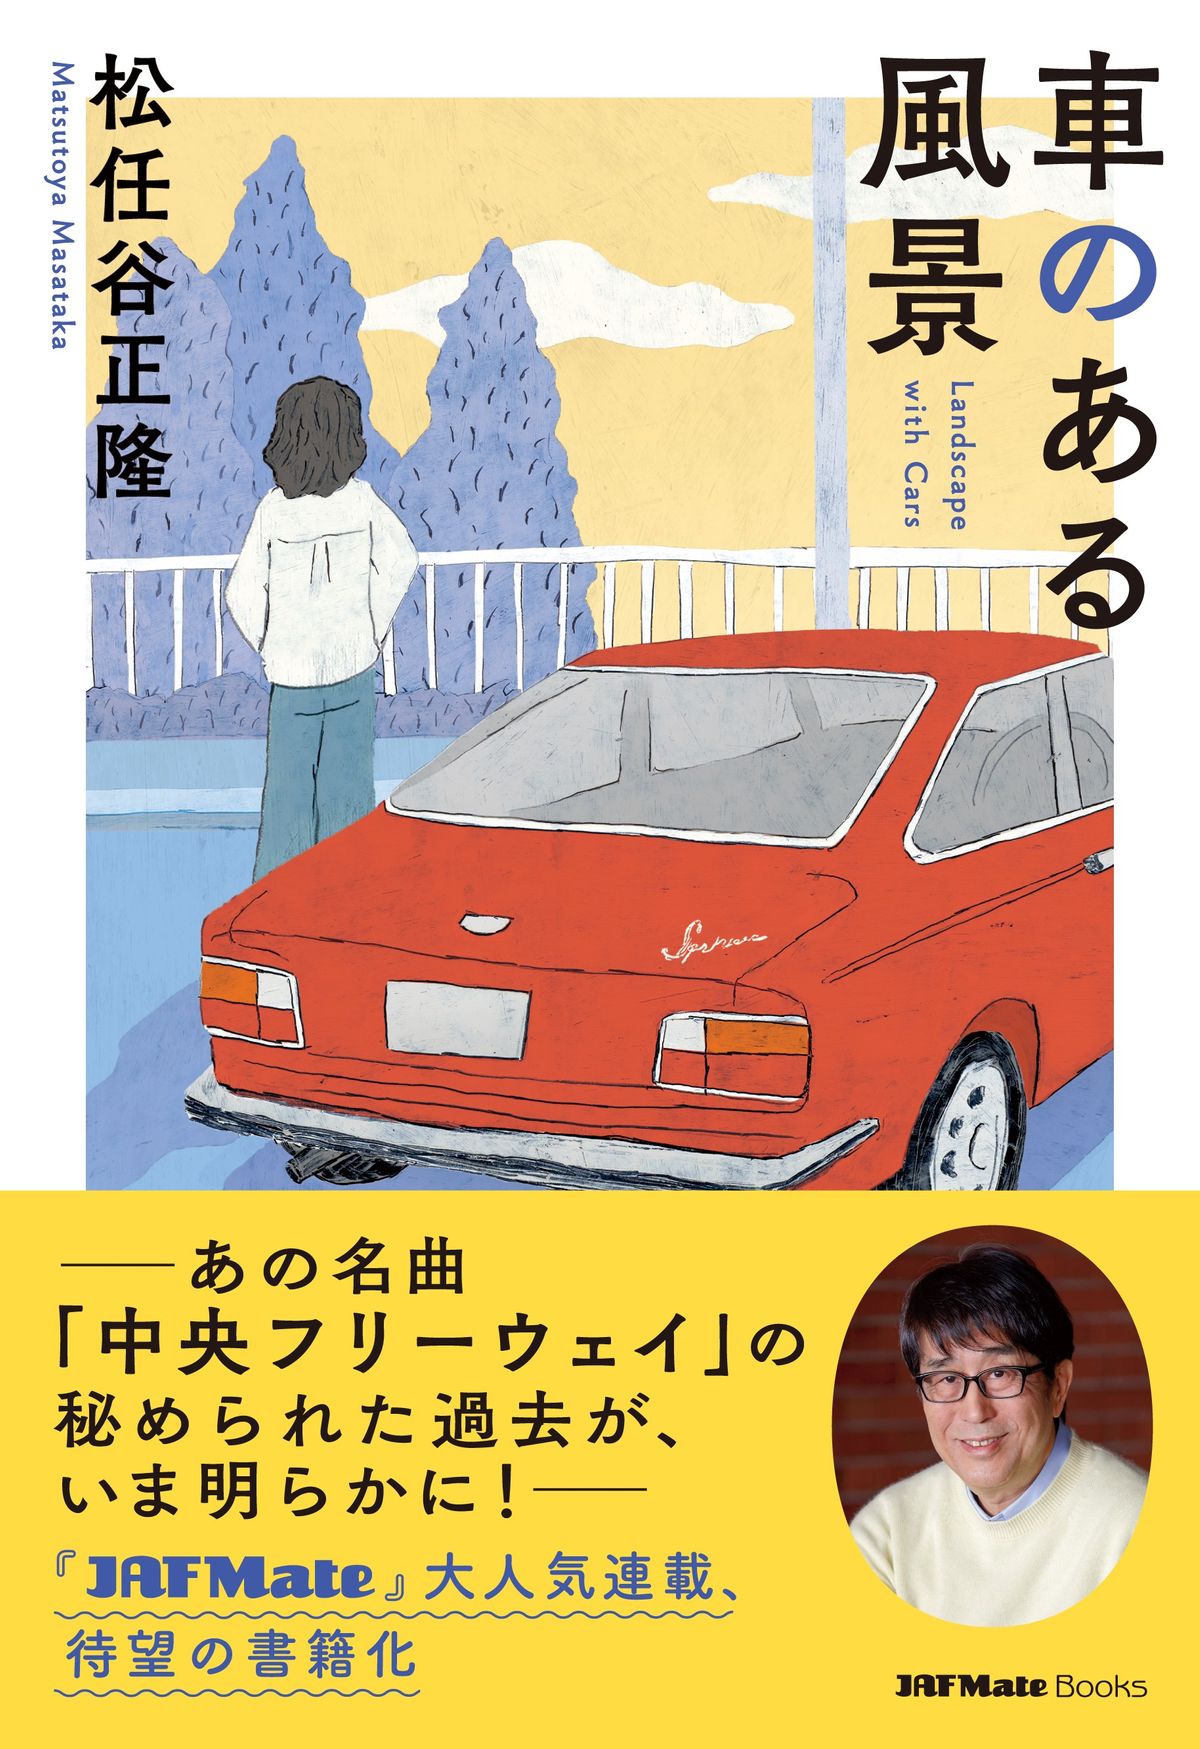 松任谷正隆さん著『車のある風景』